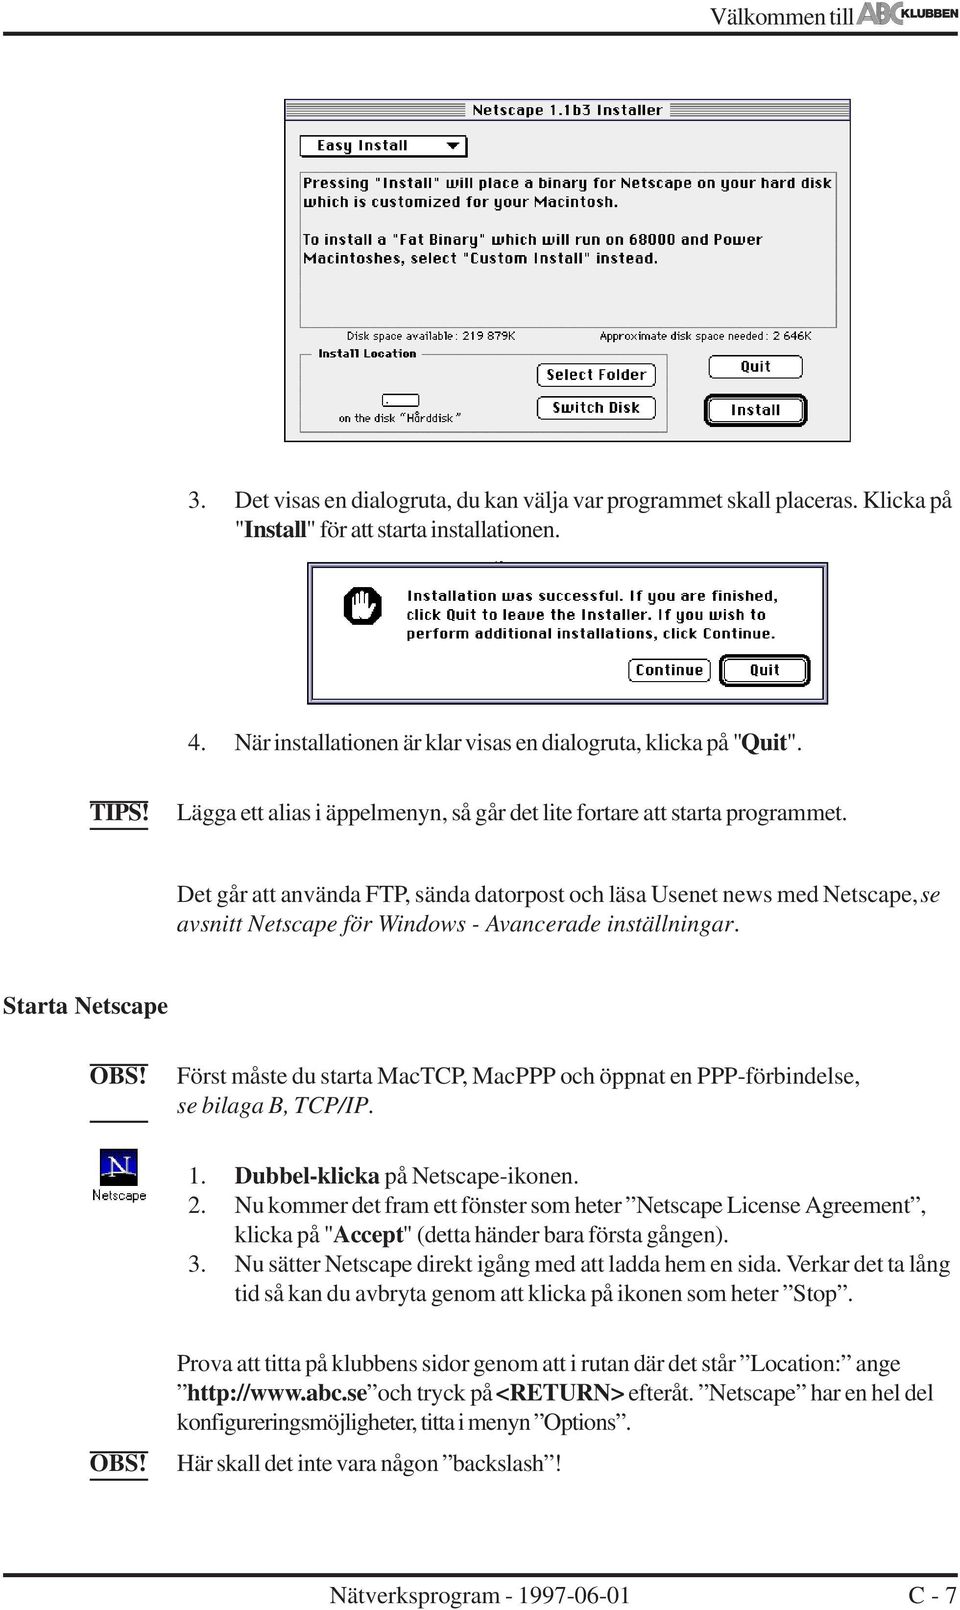 Det går att använda FTP, sända datorpost och läsa Usenet news med Netscape, se avsnitt Netscape för Windows - Avancerade inställningar.